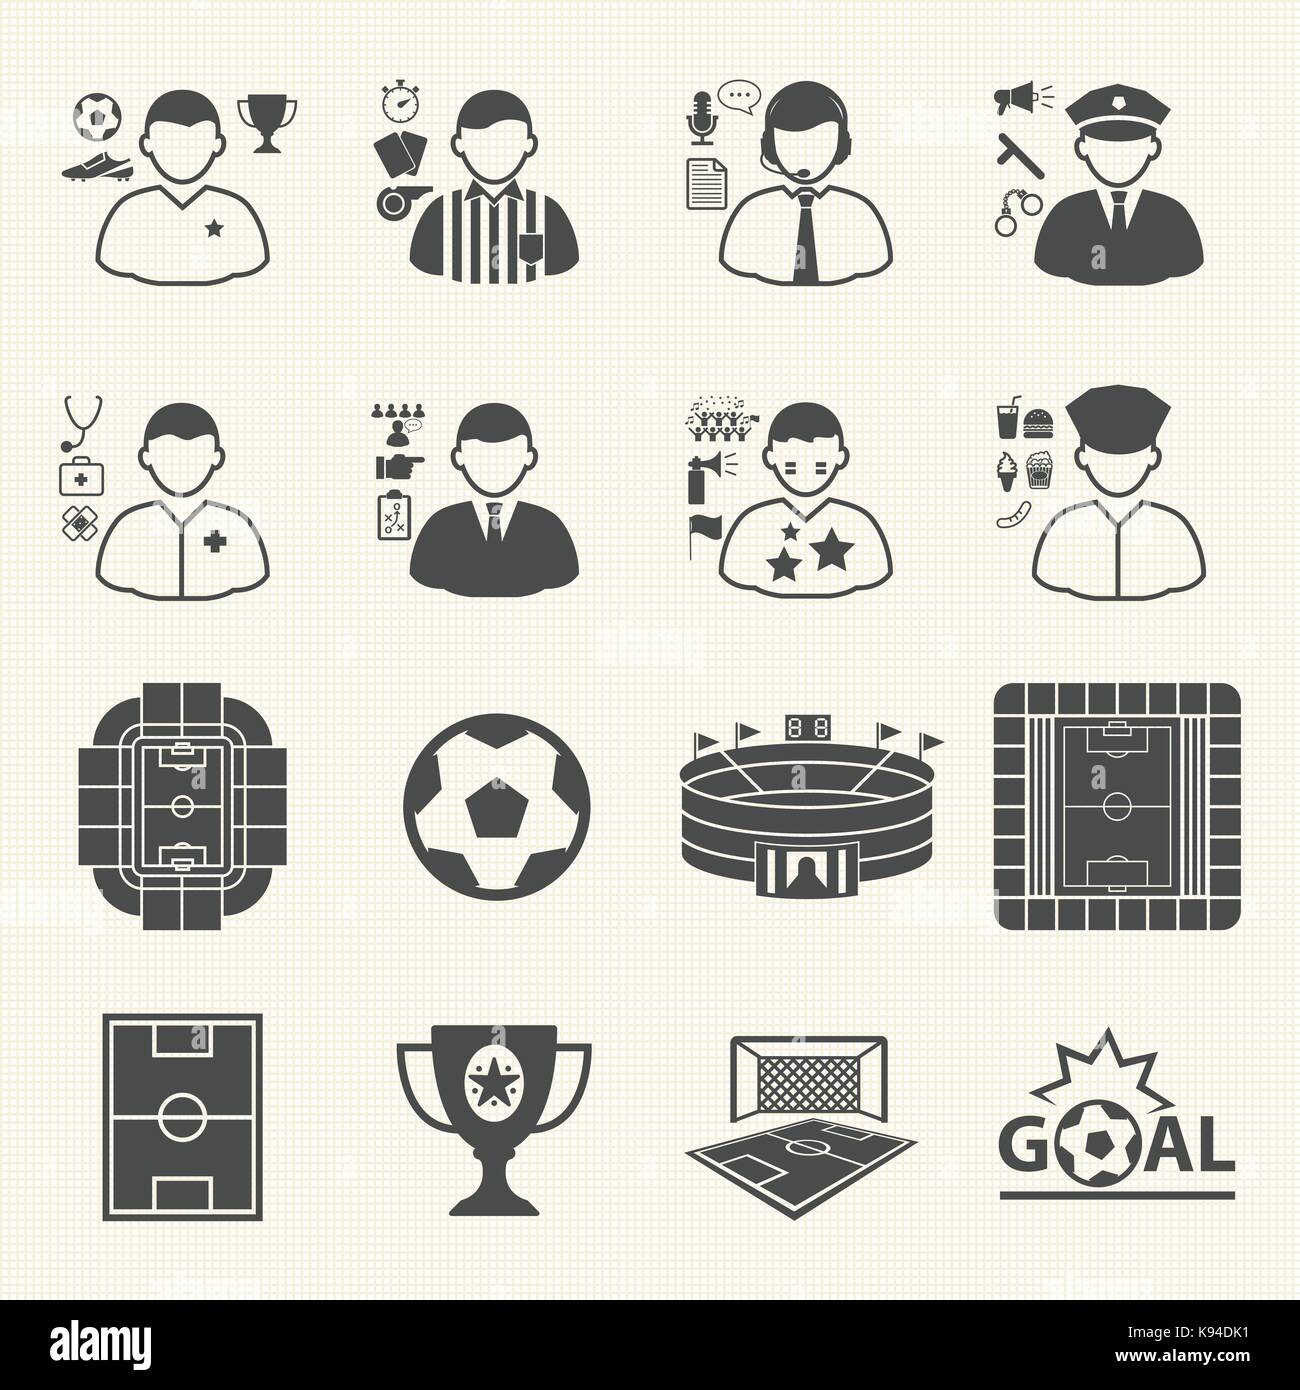 Die Mitarbeiter und die Menschen im WM-Icons. Sammlung von Symbol Fußball. Vector Icons einstellen Stock Vektor